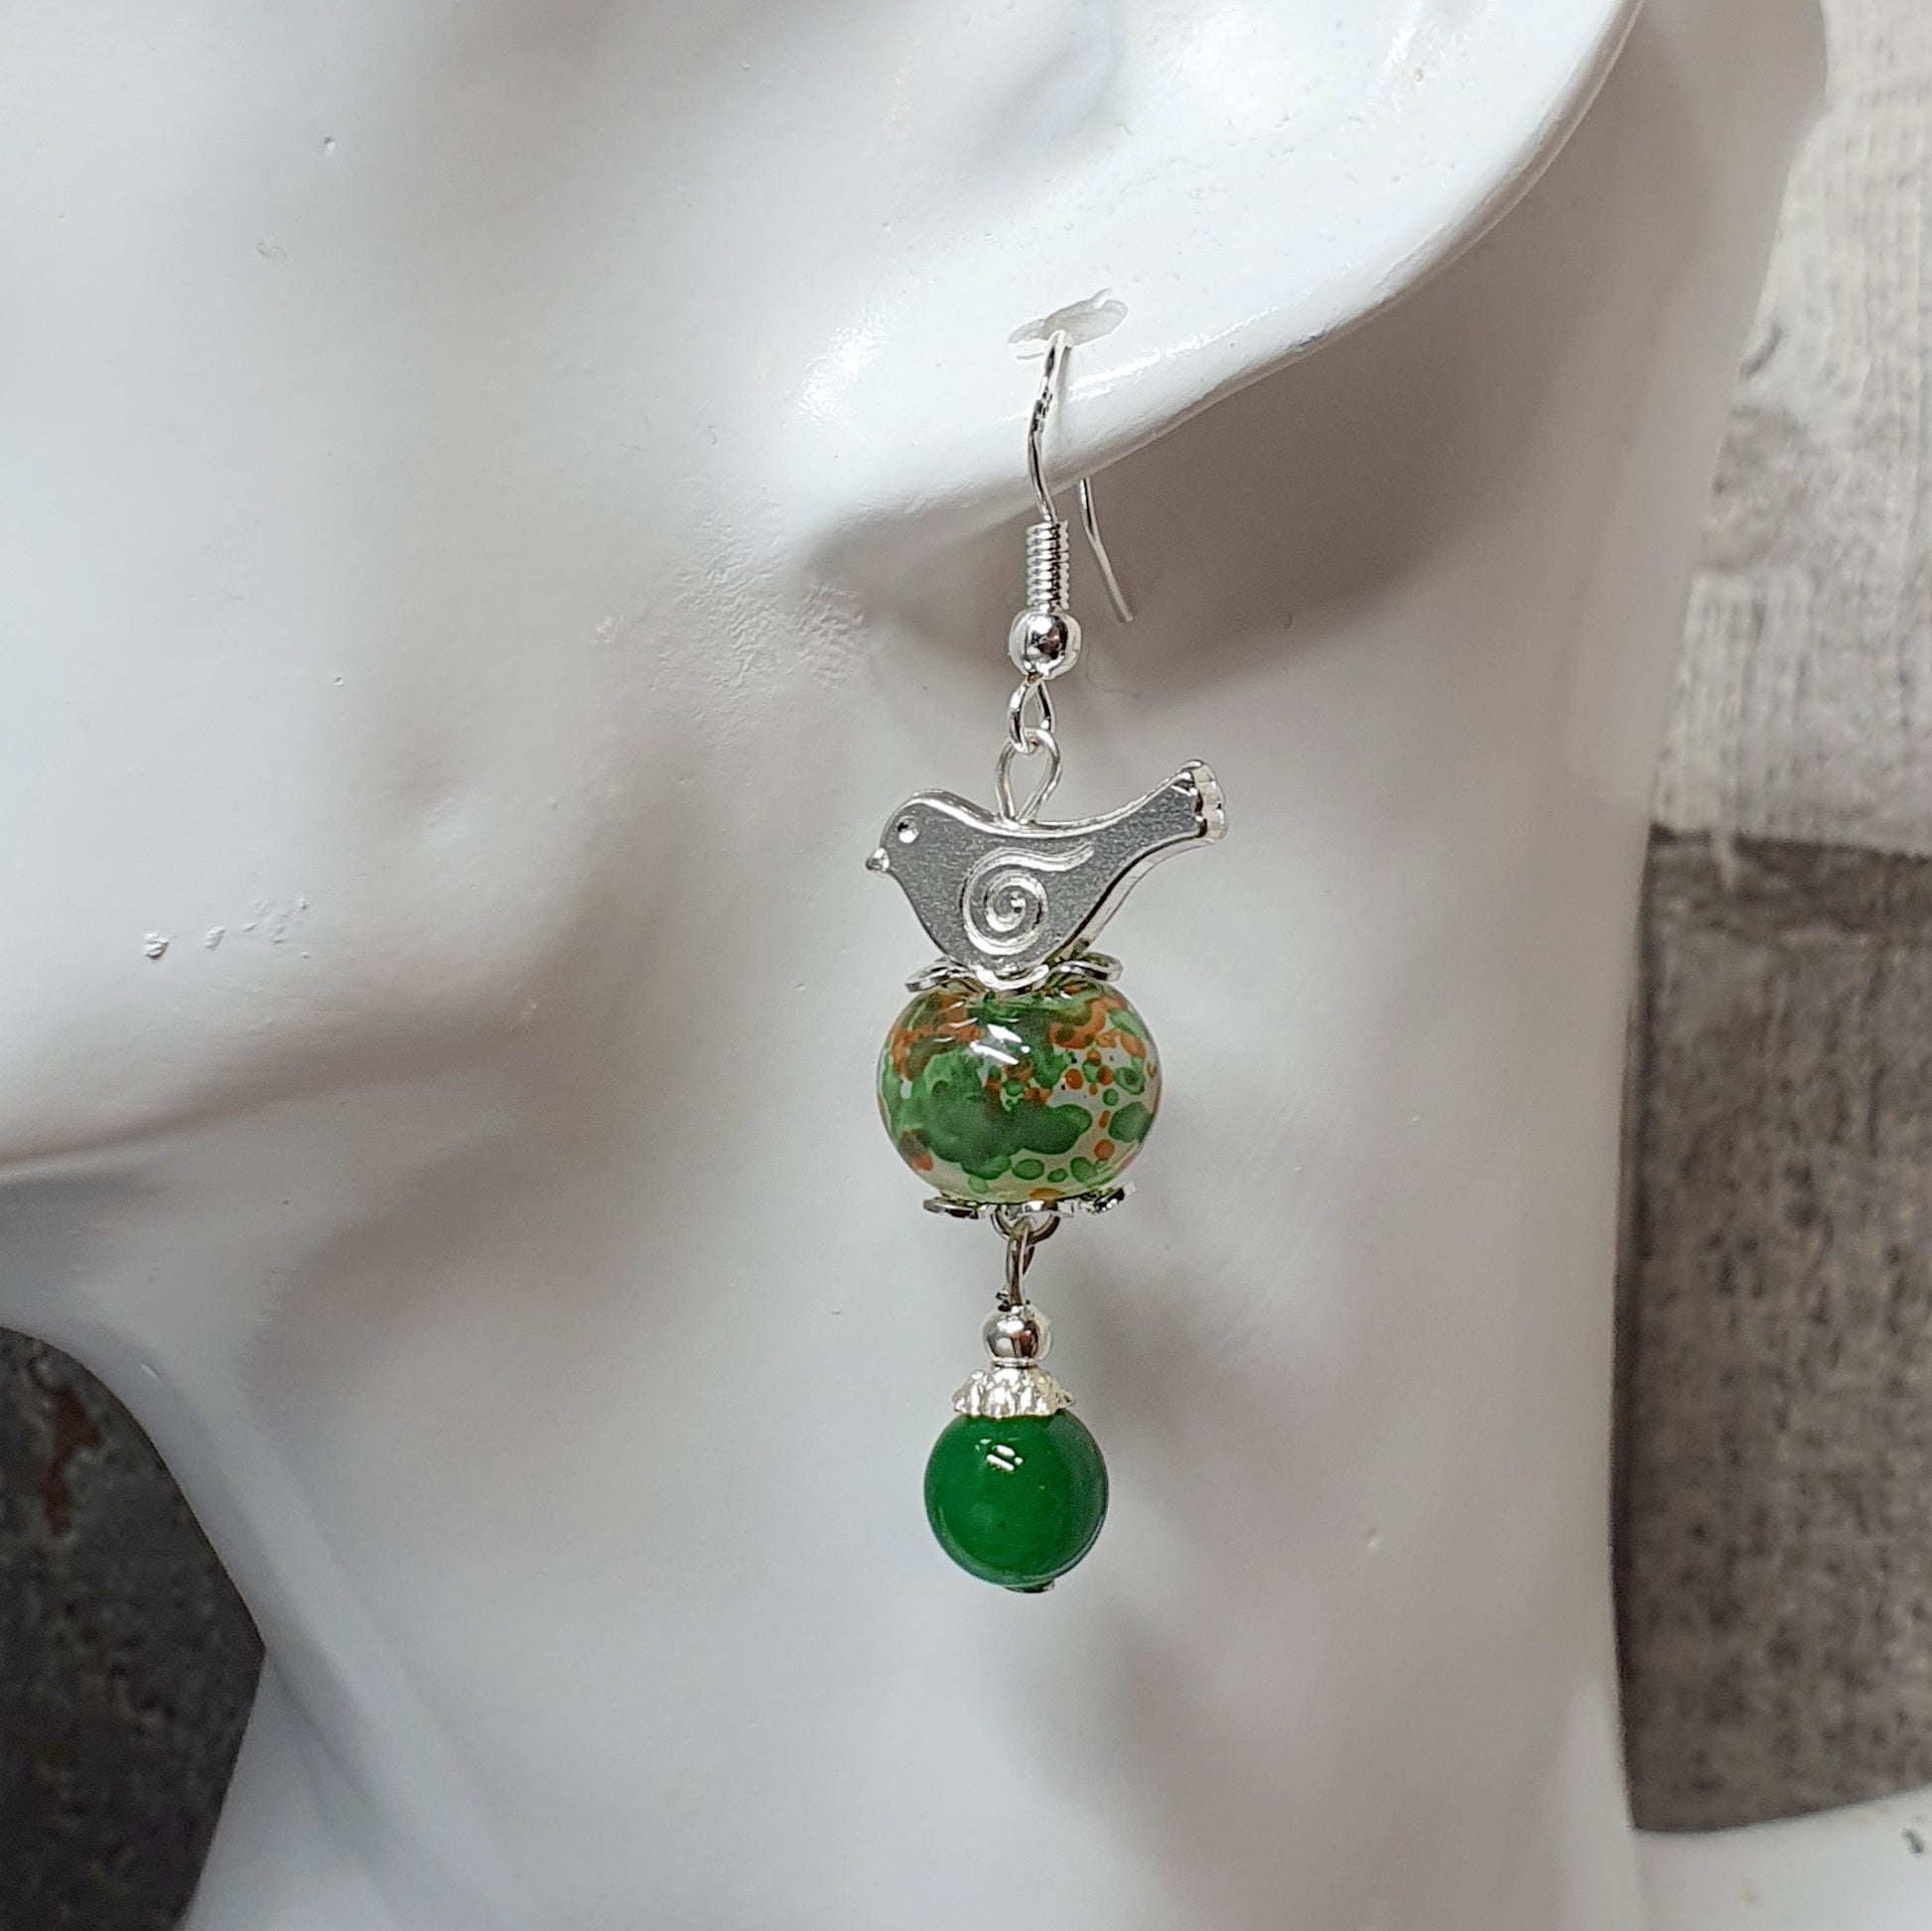 Handgefertigte Ohrhänger mit smaragdgrünen Kugeln aus Glas, kleine Vögelchen